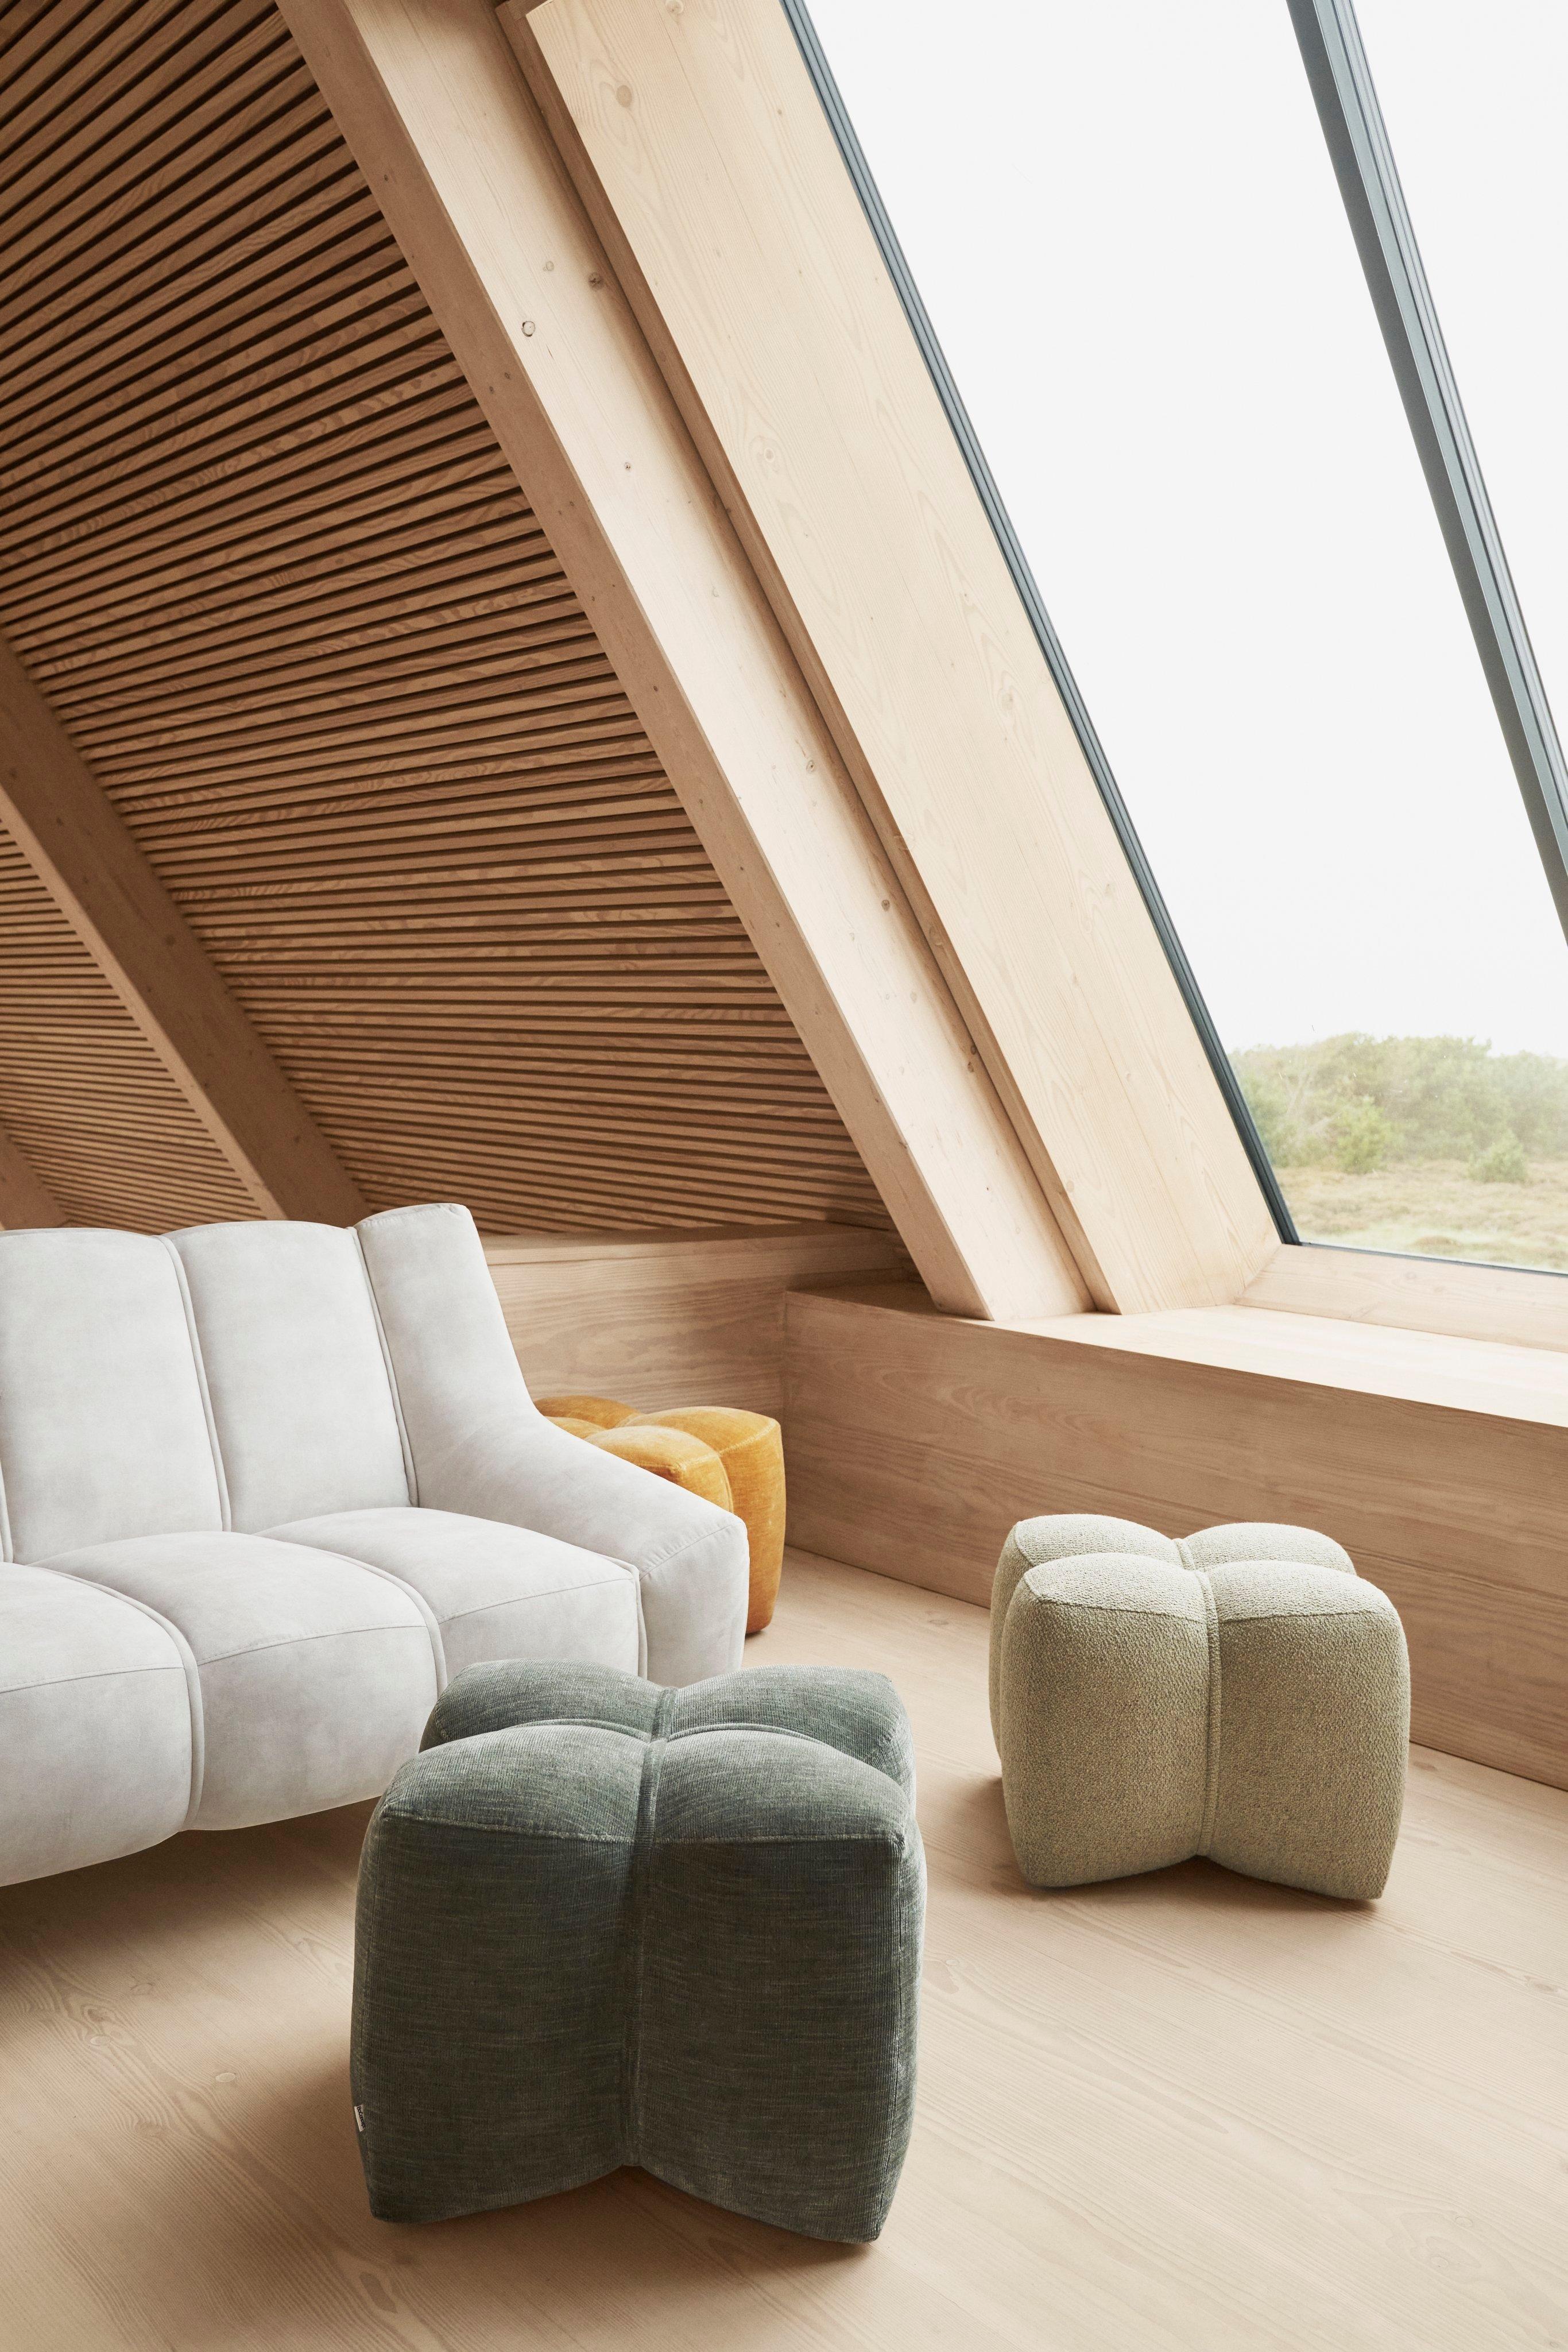 Designer Furniture Stores and Interior Design | BoConcept